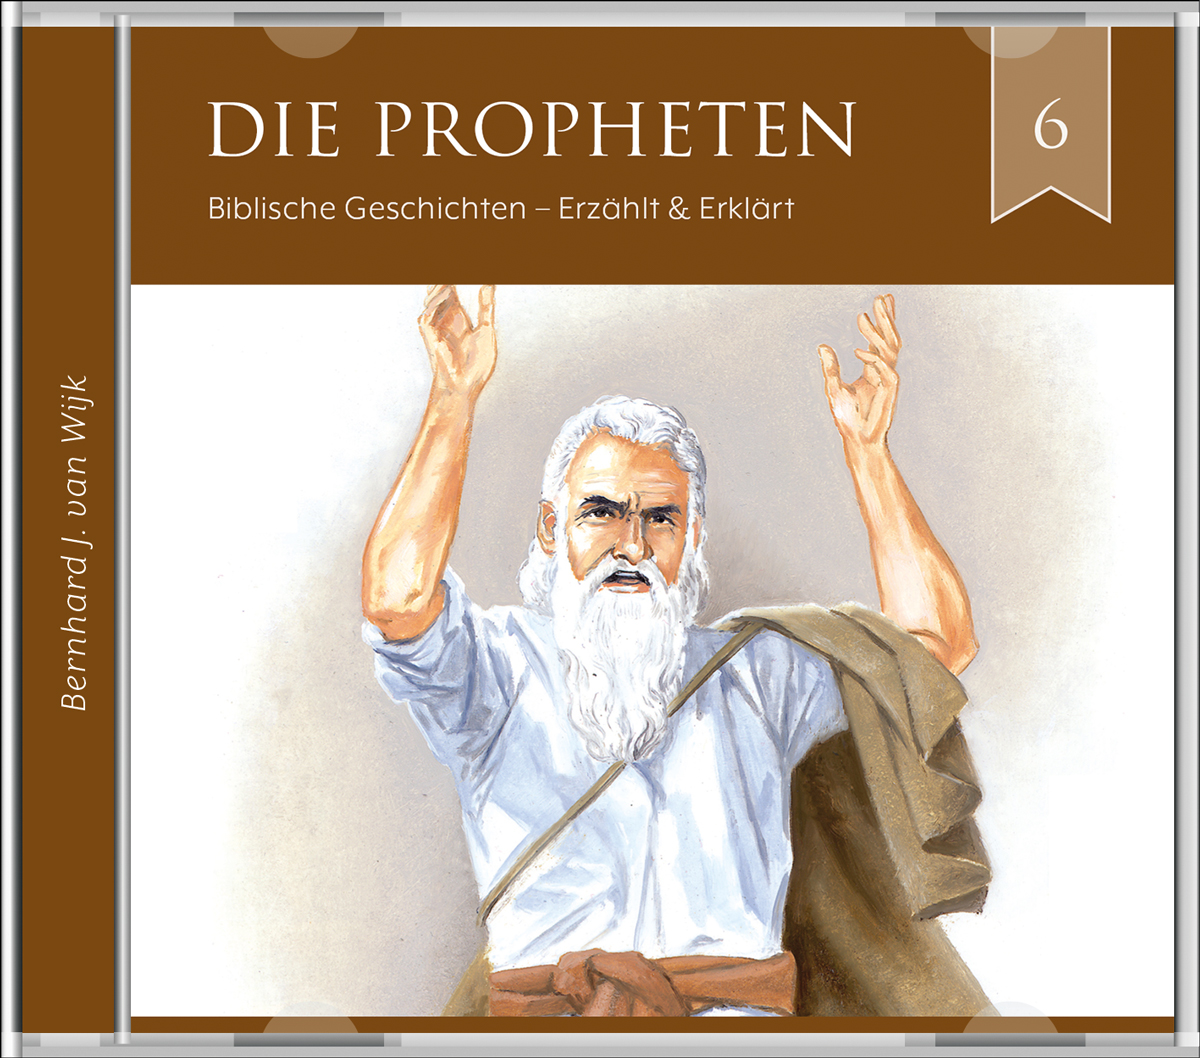 Die Propheten - Gnade und Gericht (Folge 6), Serie Biblische Geschichten - erzählt und erklärt - Audio-Hörbuch